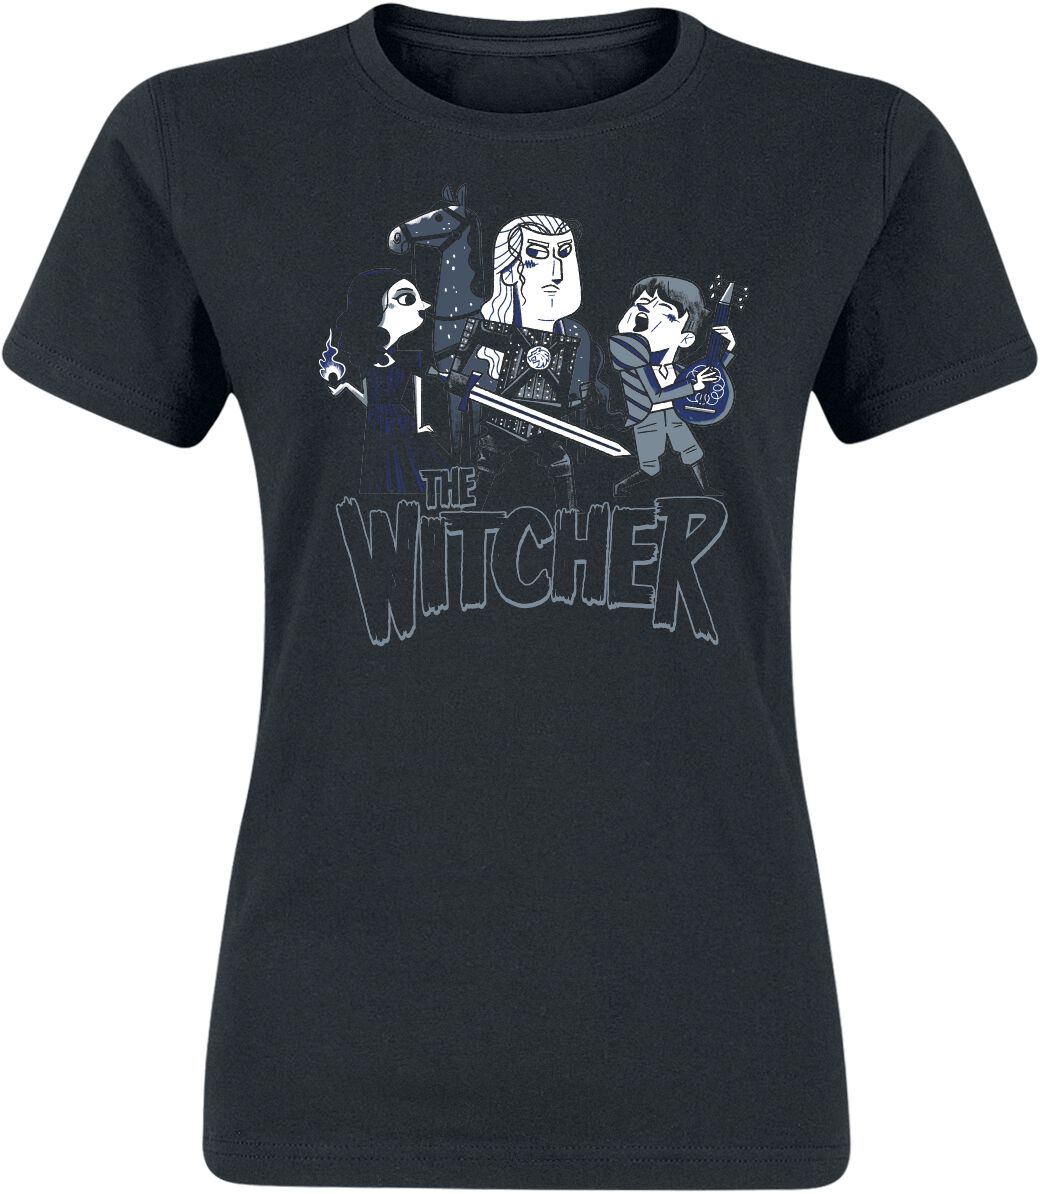 T-Shirt Manches courtes de The Witcher - Team Illustrated - S à XXL - pour Femme - noir